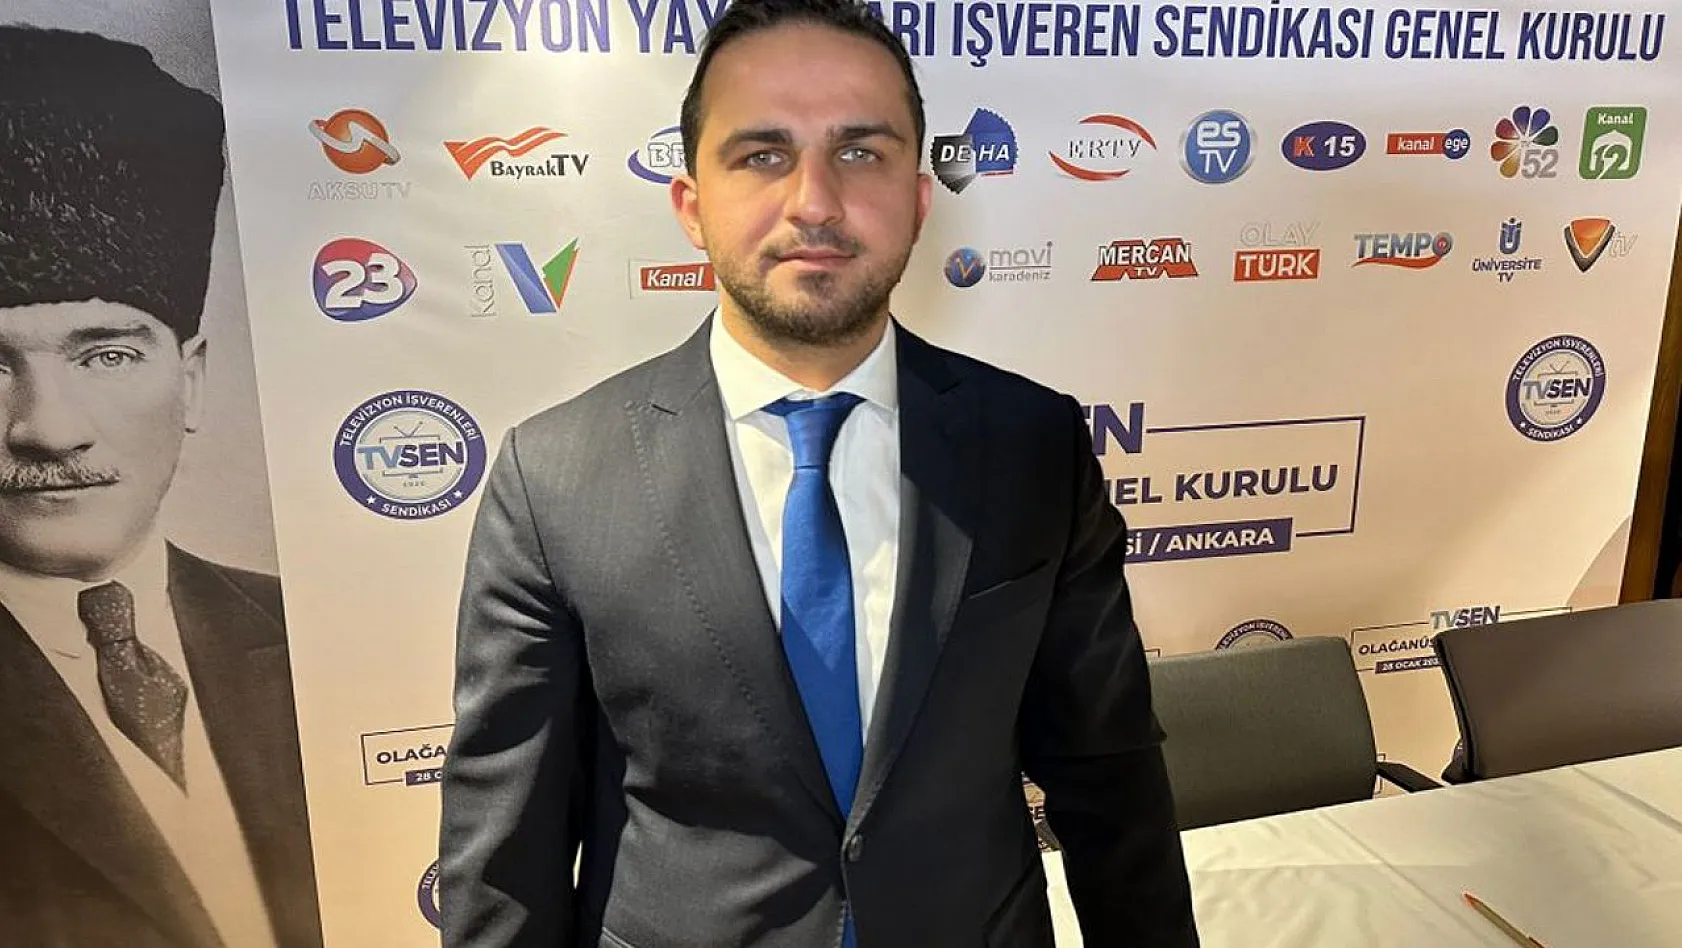 Yunus Evliyaoğlu TV SEN Genel Başkanlığına Seçildi